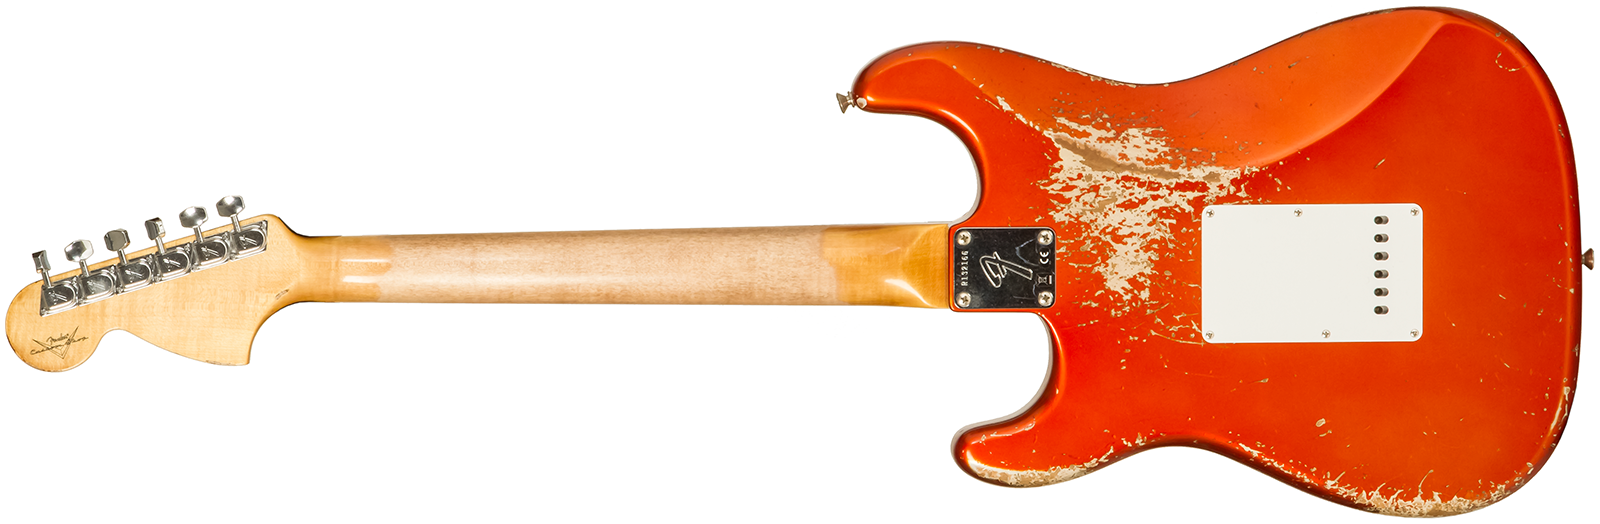 Fender Custom Shop Strat 1969 3s Trem Rw #r132166 - Heavy Relic Candy Tangerine - Elektrische gitaar in Str-vorm - Variation 1